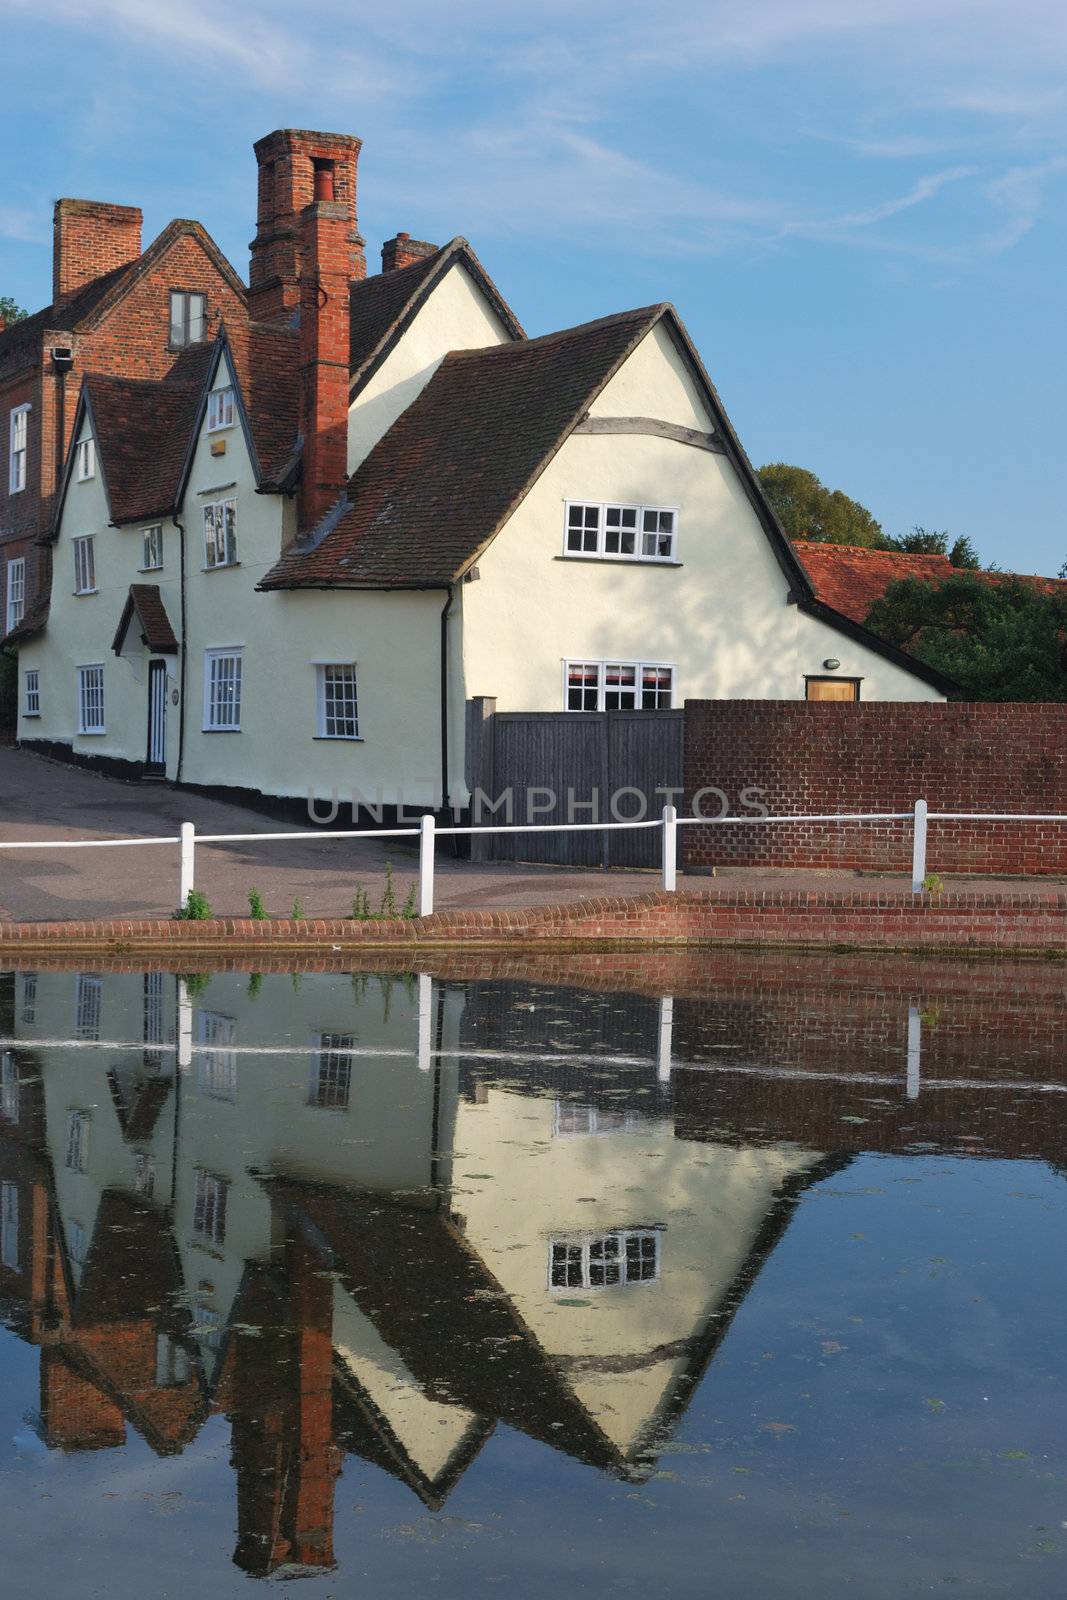 Cottages reflected on village pond